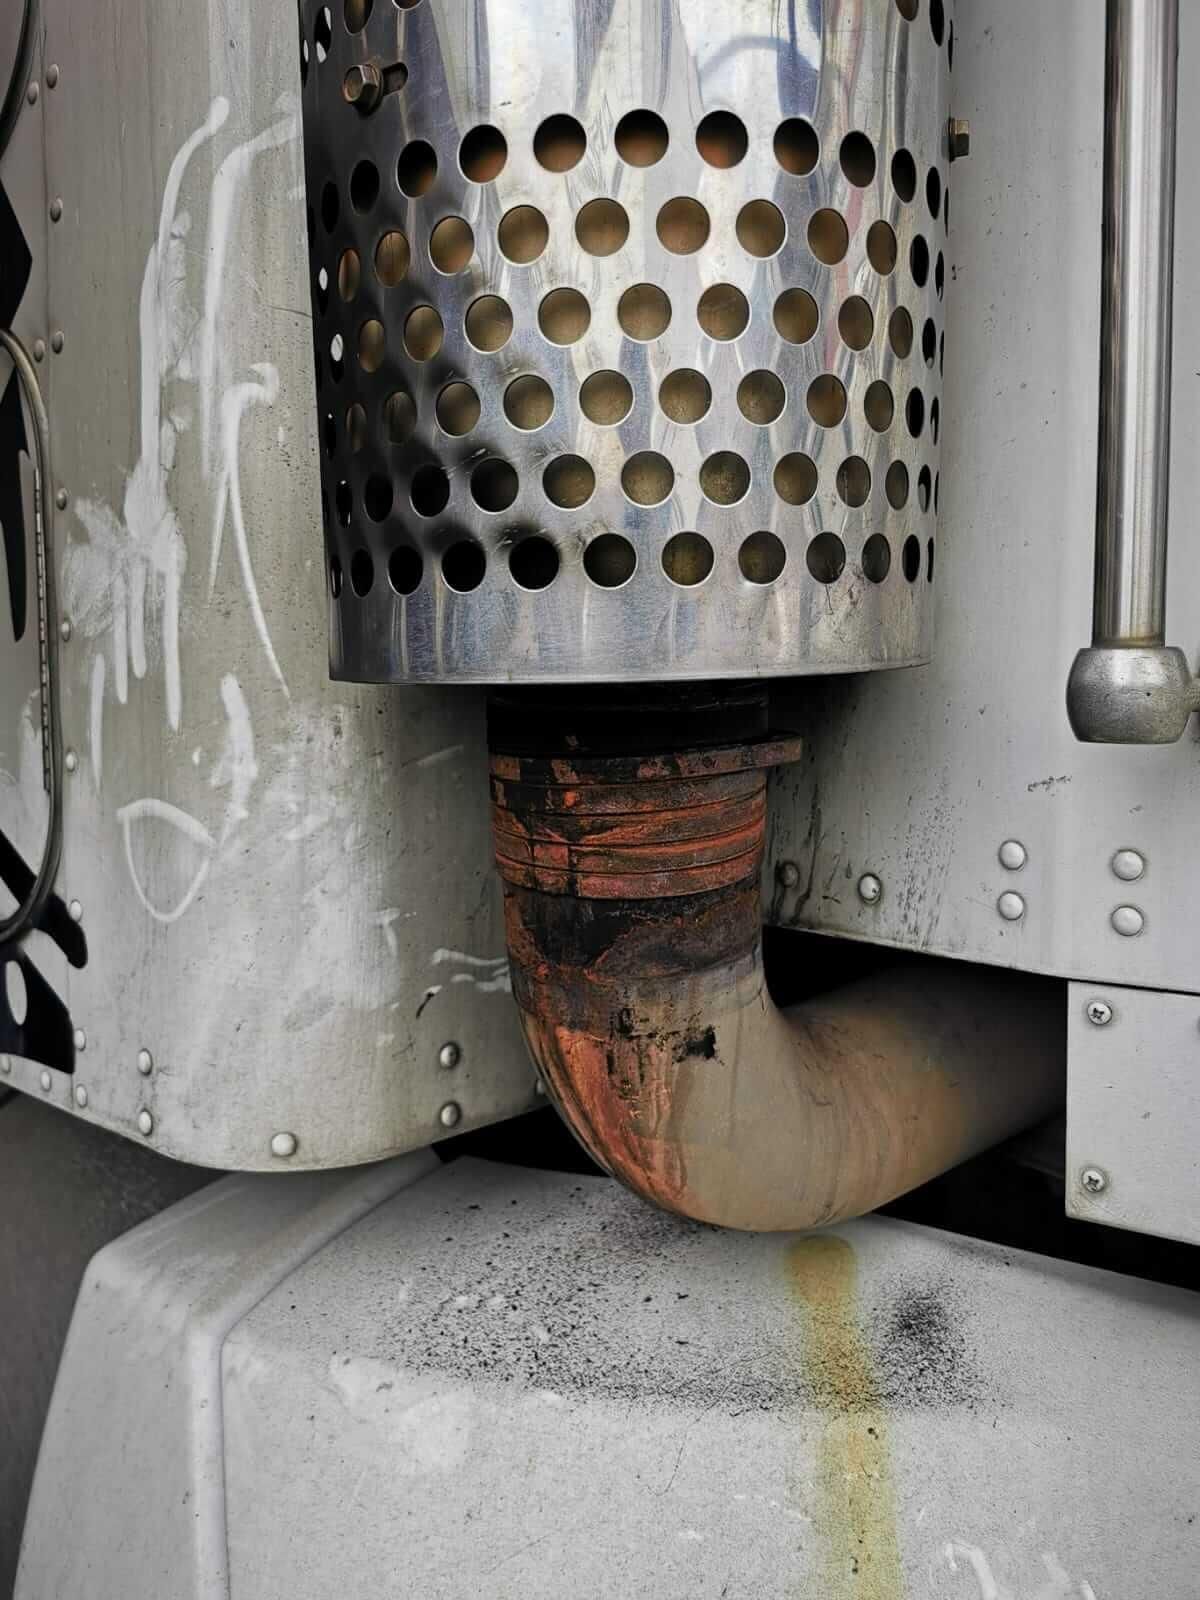 MUELLES Y PARTES AUTOMOTRICES CARRETO – Reparacion de tubo sagra para escape